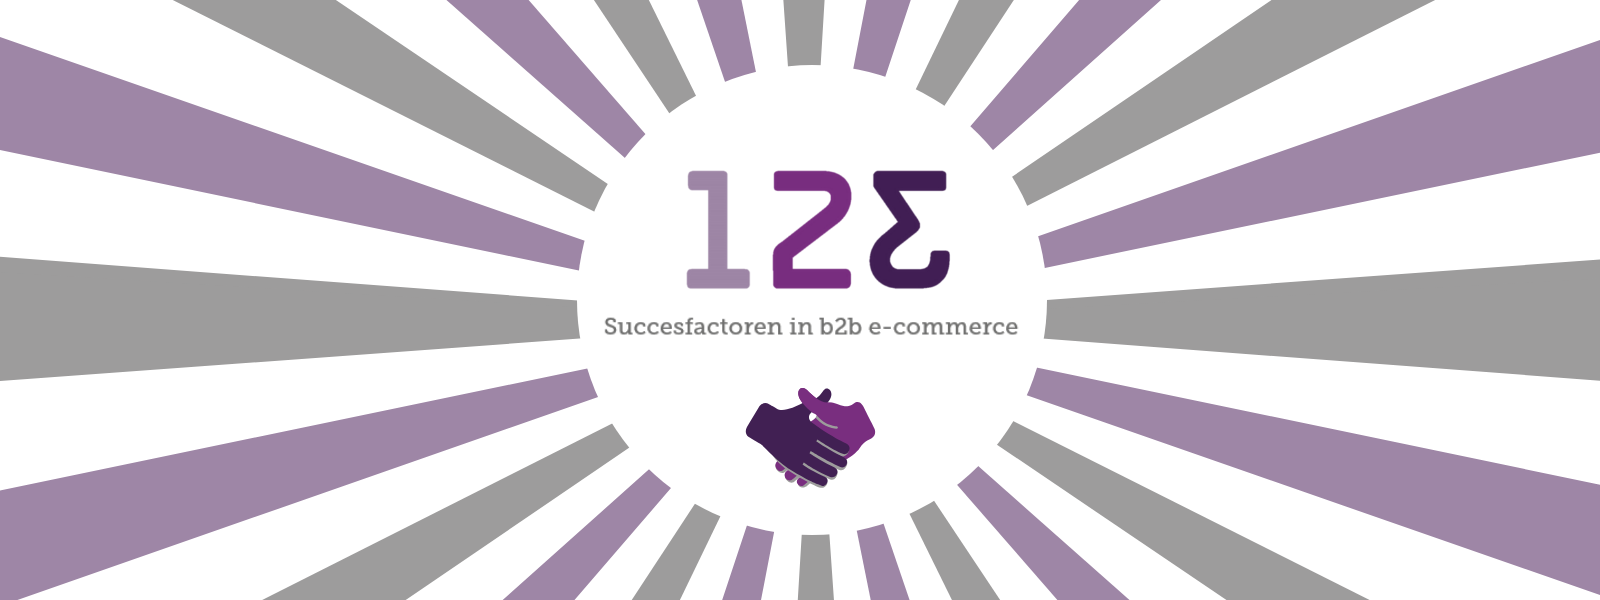 123 belangrijkste succesfactoren in b2b e-commerce